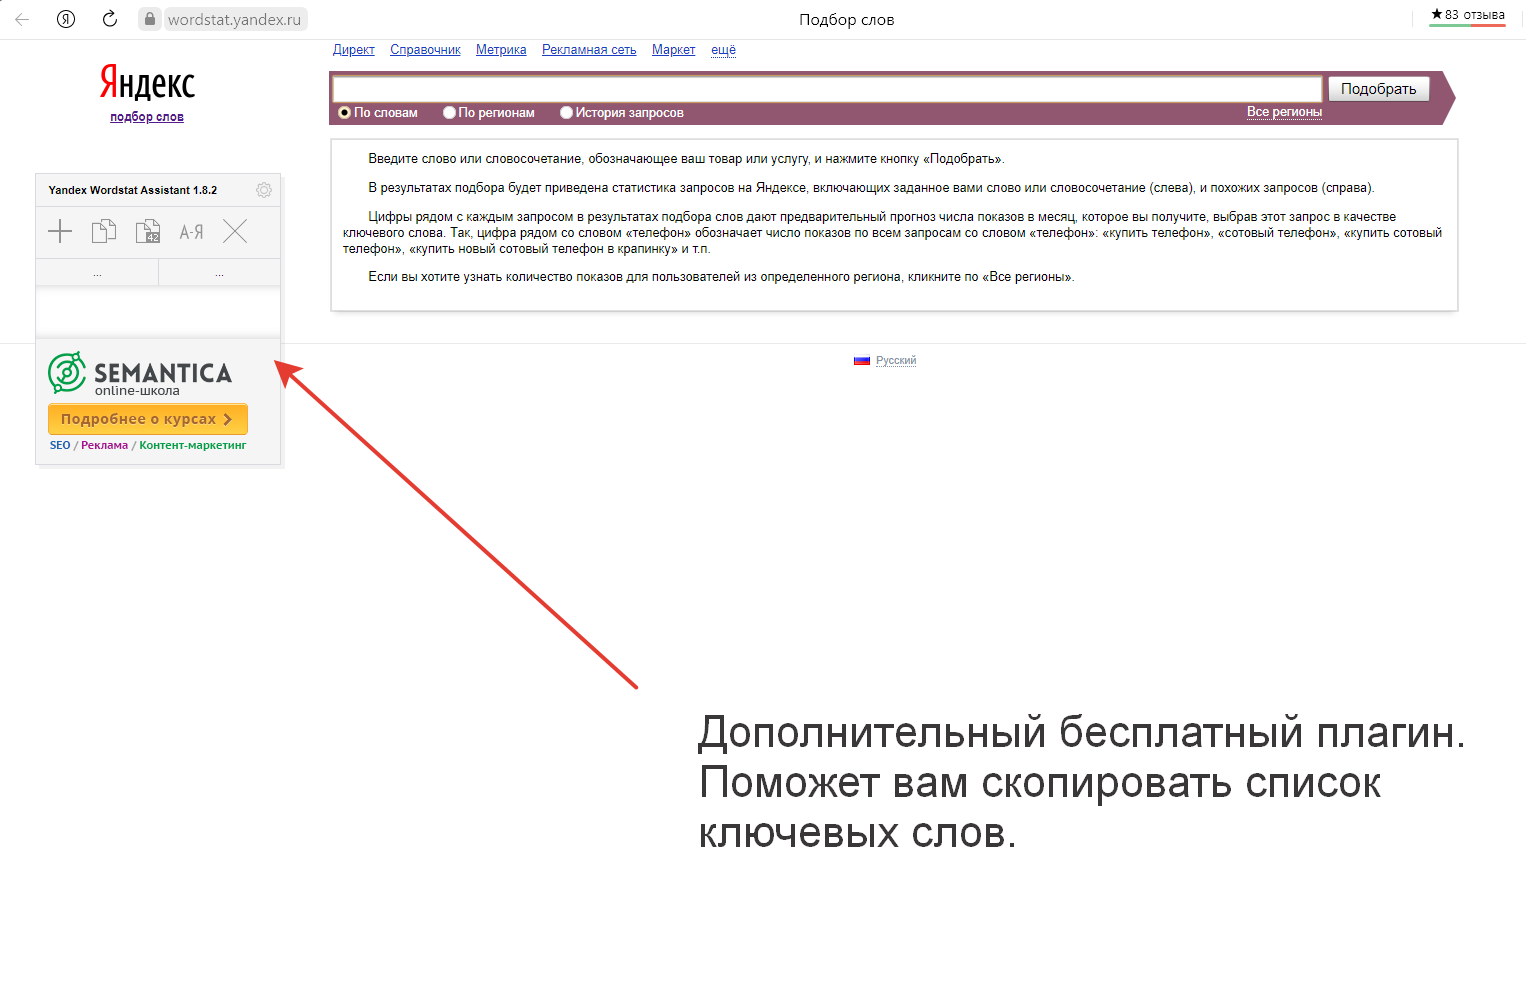 Подбор ключевых слов в Яндекс Wordstat